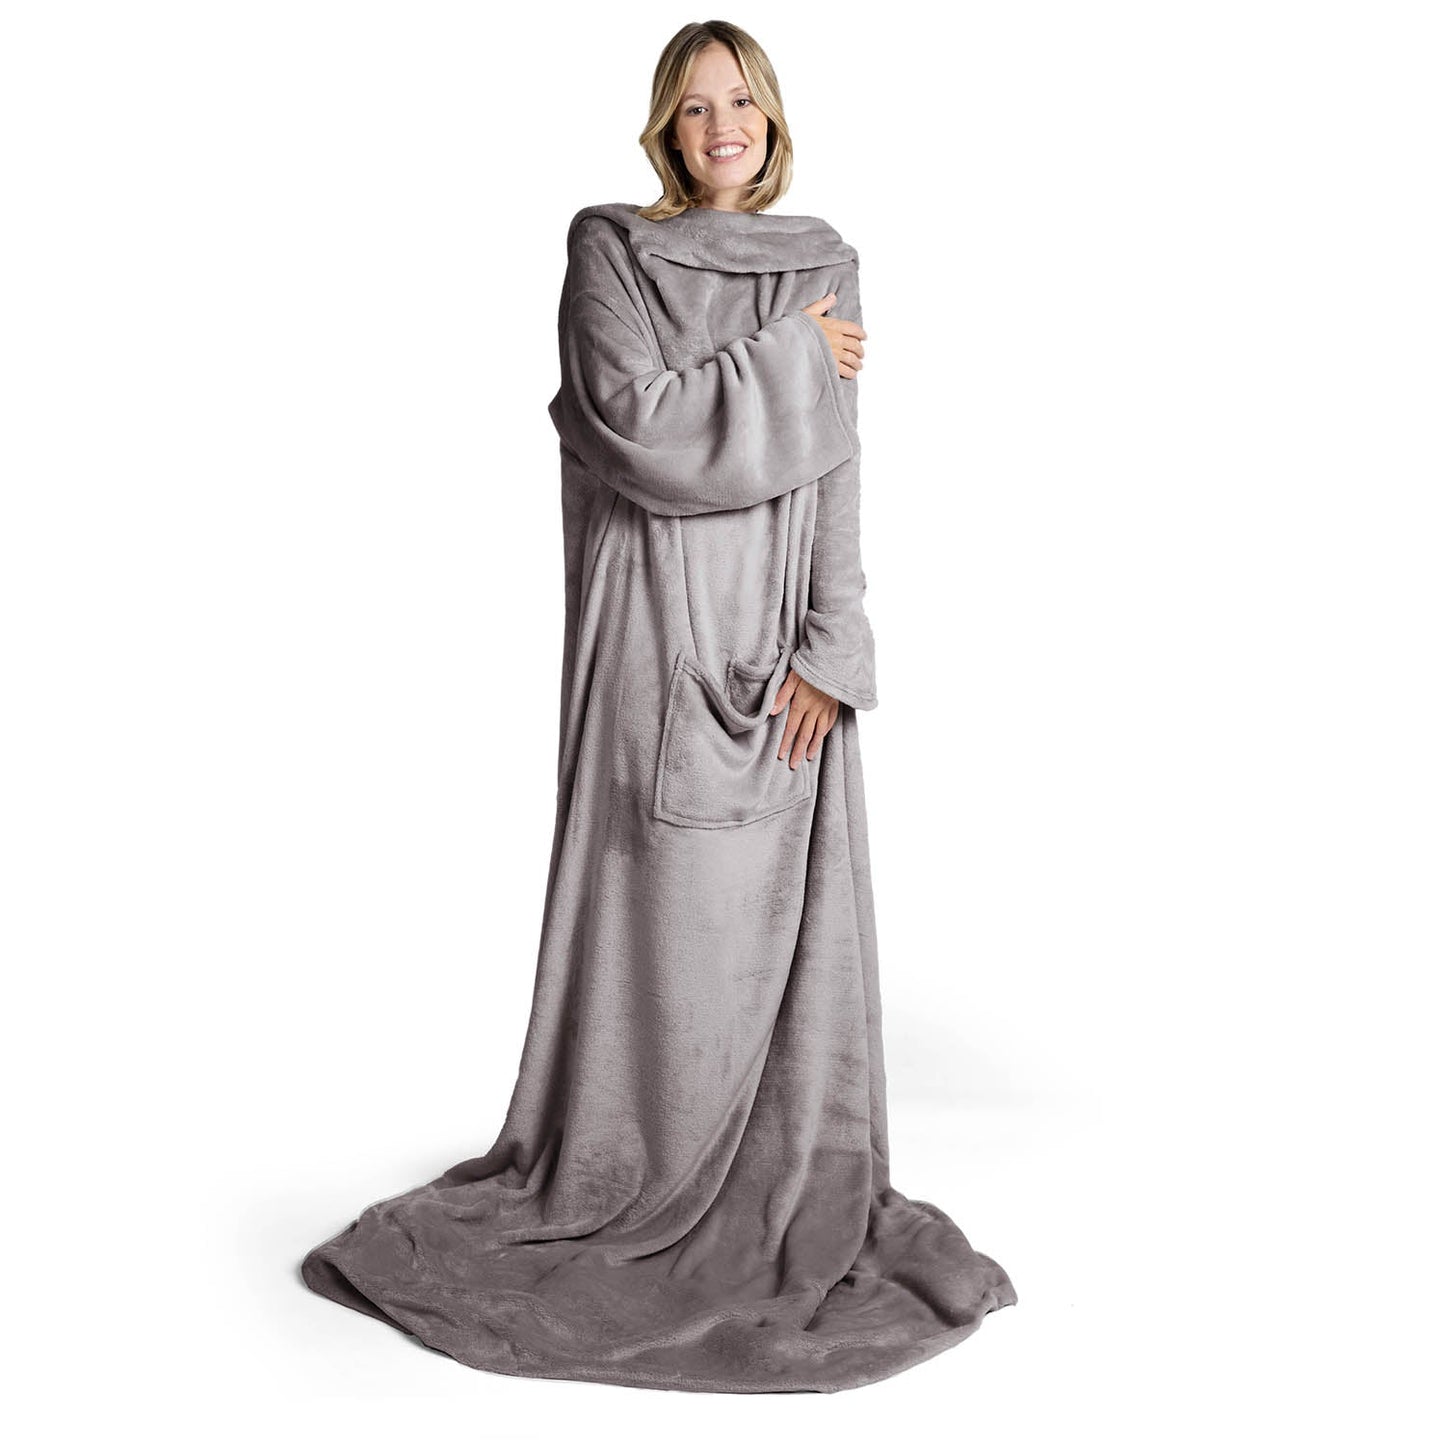 Lächelnde Frau in einem übergroßen grauen flauschigen Kleidungsstück das bis zum Boden reicht steht vor weißem Hintergrund.